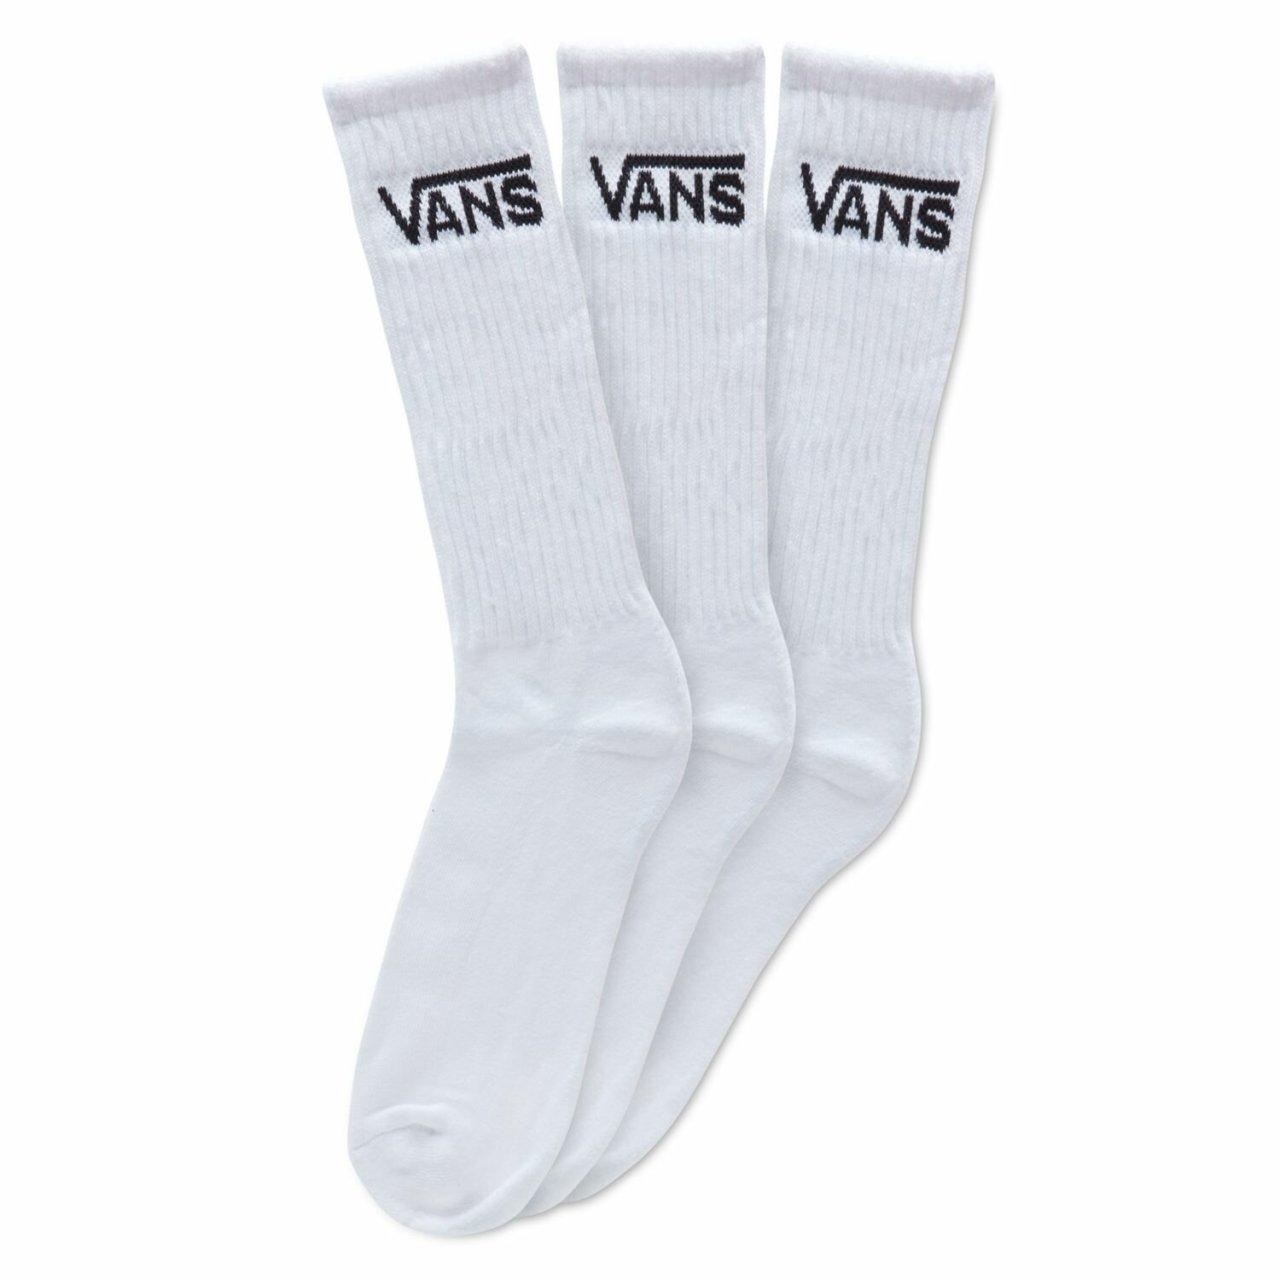 Vans Classic Uzun Çorap Beyaz (3 ÇİFT PK) 42.5-47 Numara